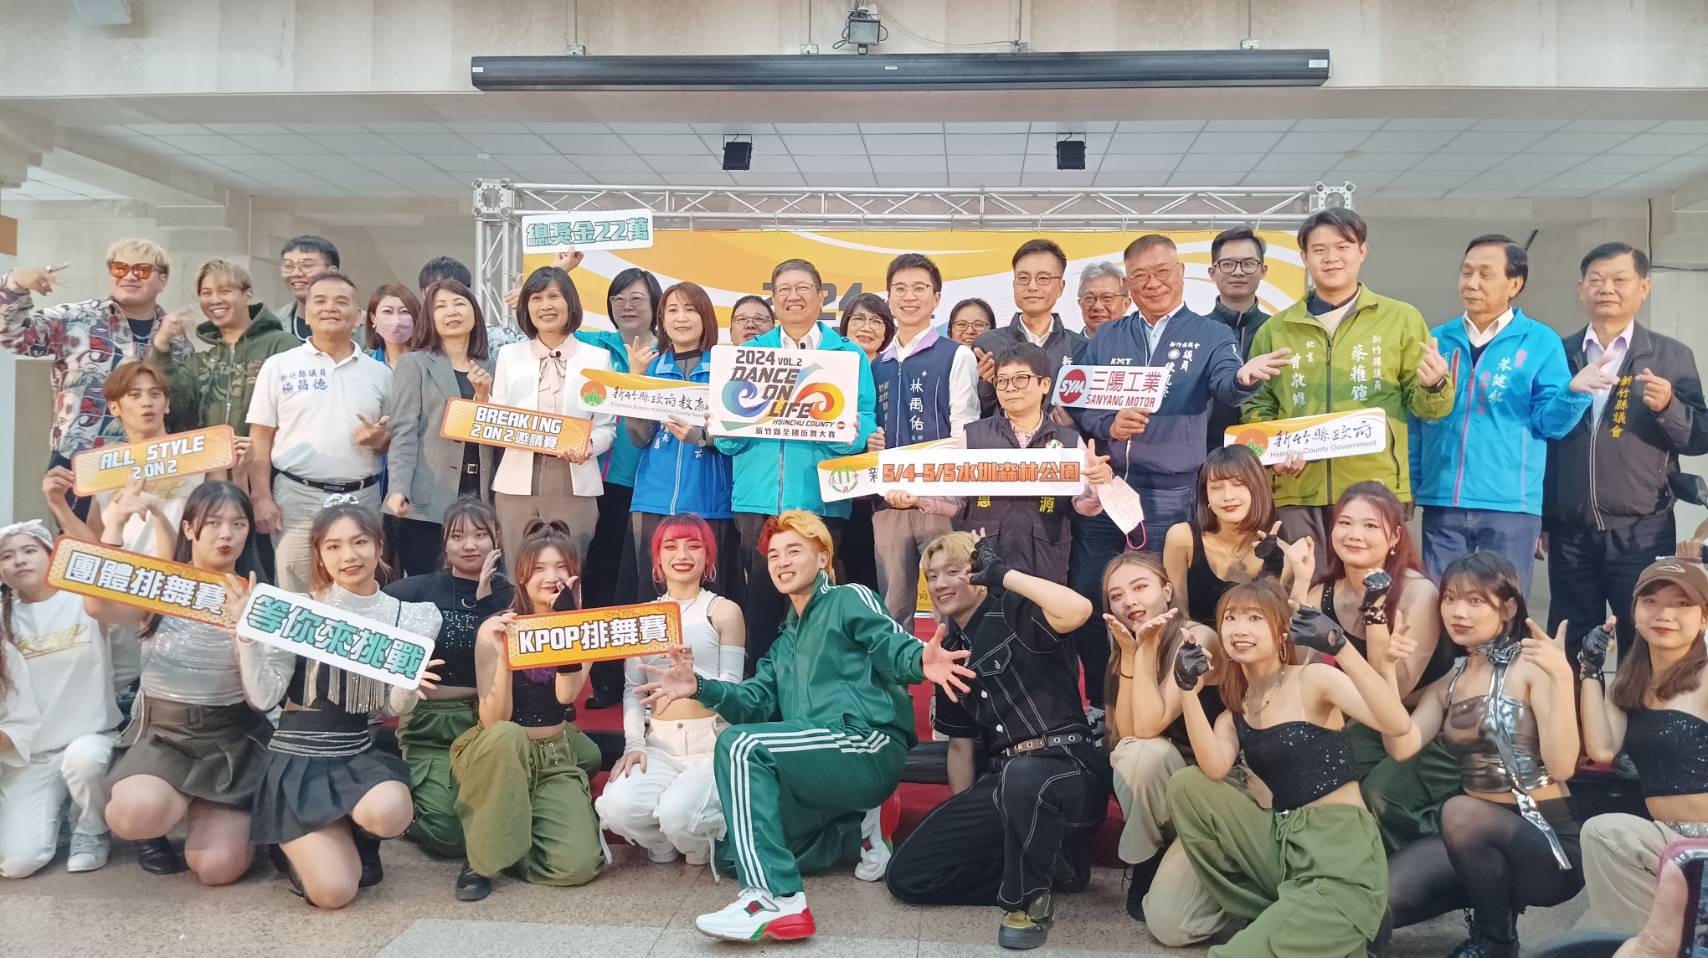 舞動青春「新竹縣全國街舞大賽」DANCE ON LIFE將在水圳森林公園重磅登場　即日起開放報名